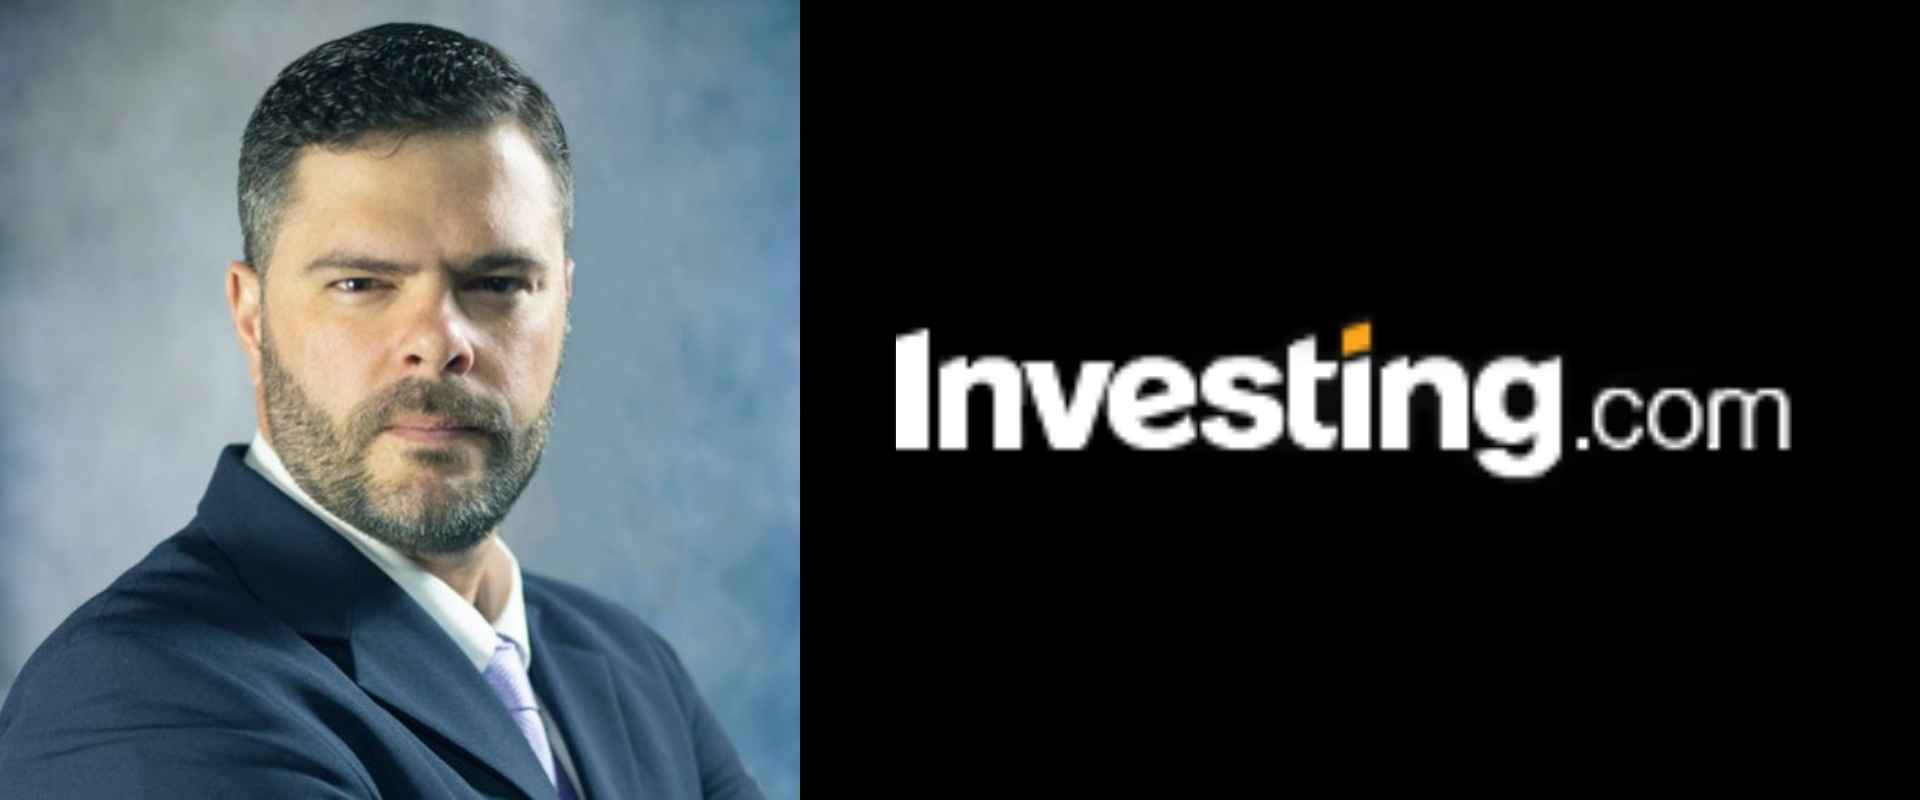 Em seu artigo ao Investing.com, o professor de Finanças, Carlos Heitor, abordou as 12 Métricas de Risco mais importantes em investimentos.